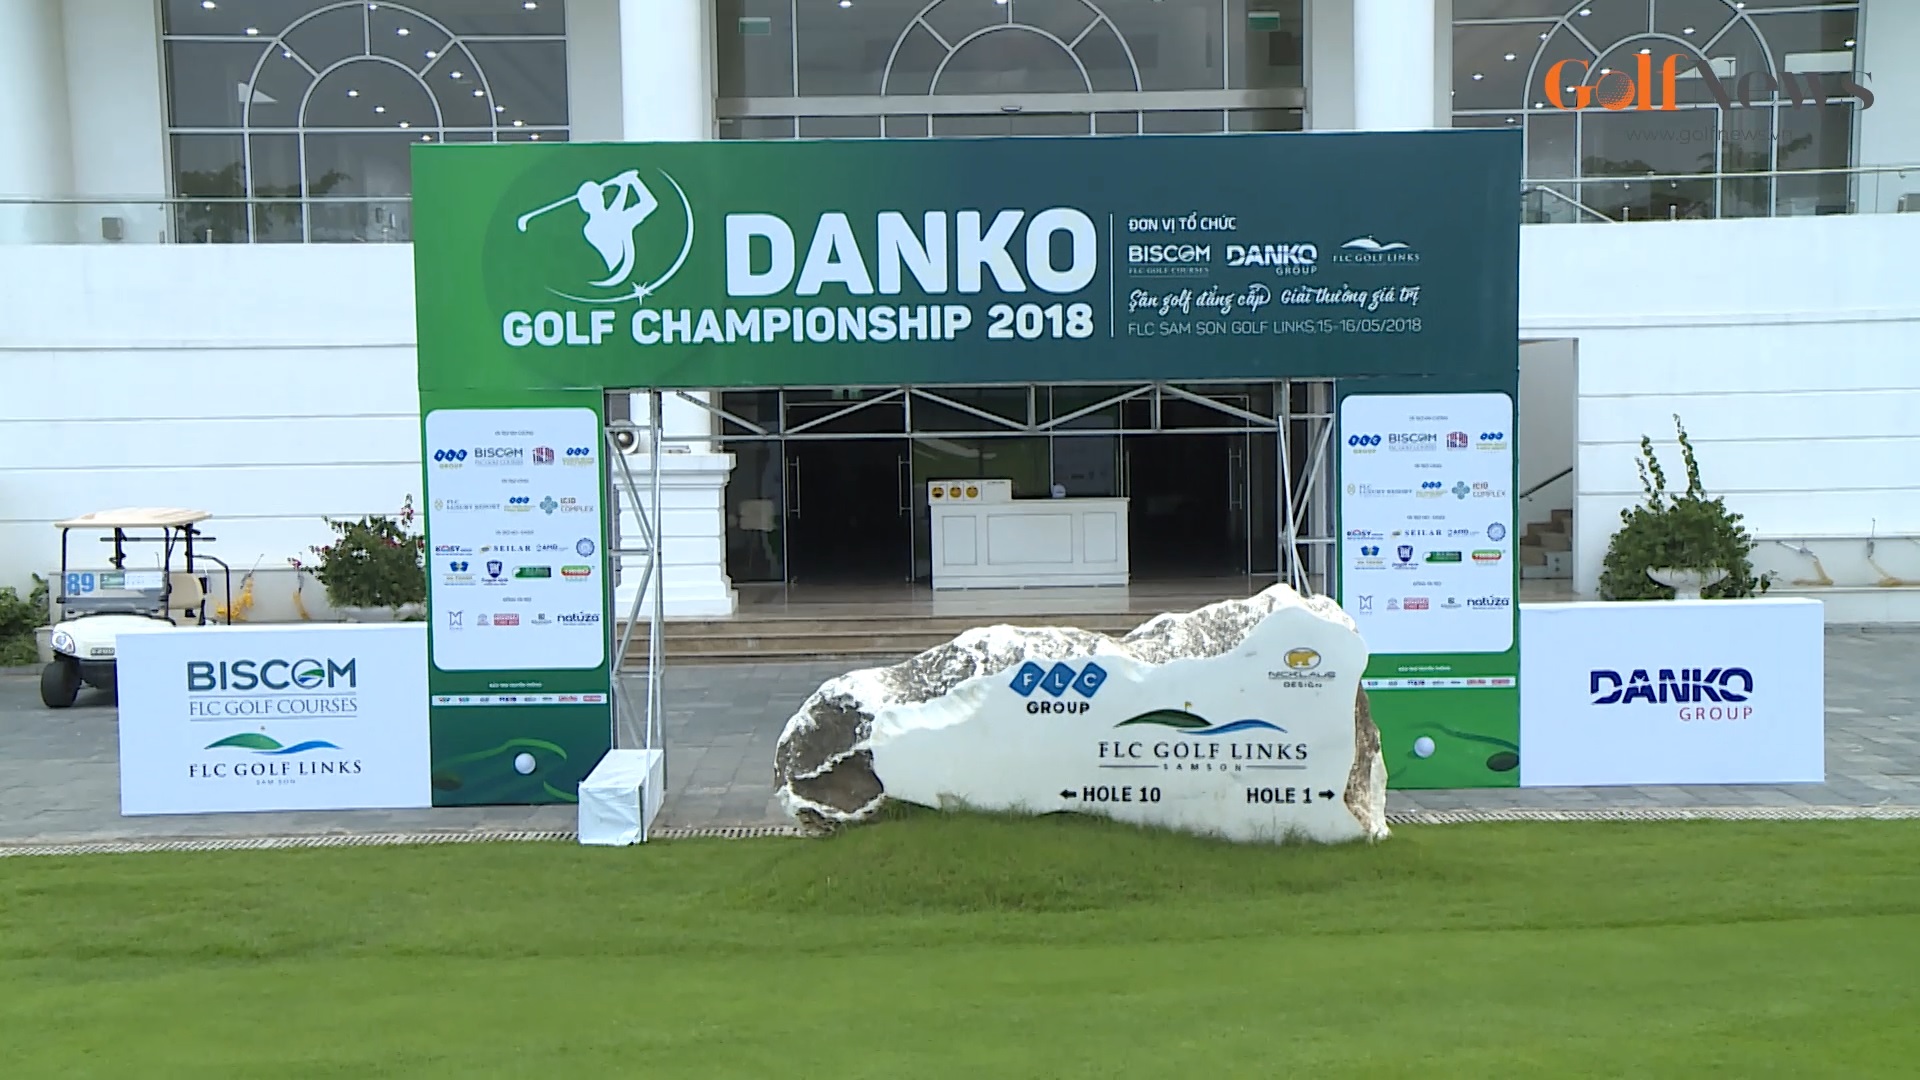 Không khí chuẩn bị trước Giải Đấu Danko Golf Championship 2018